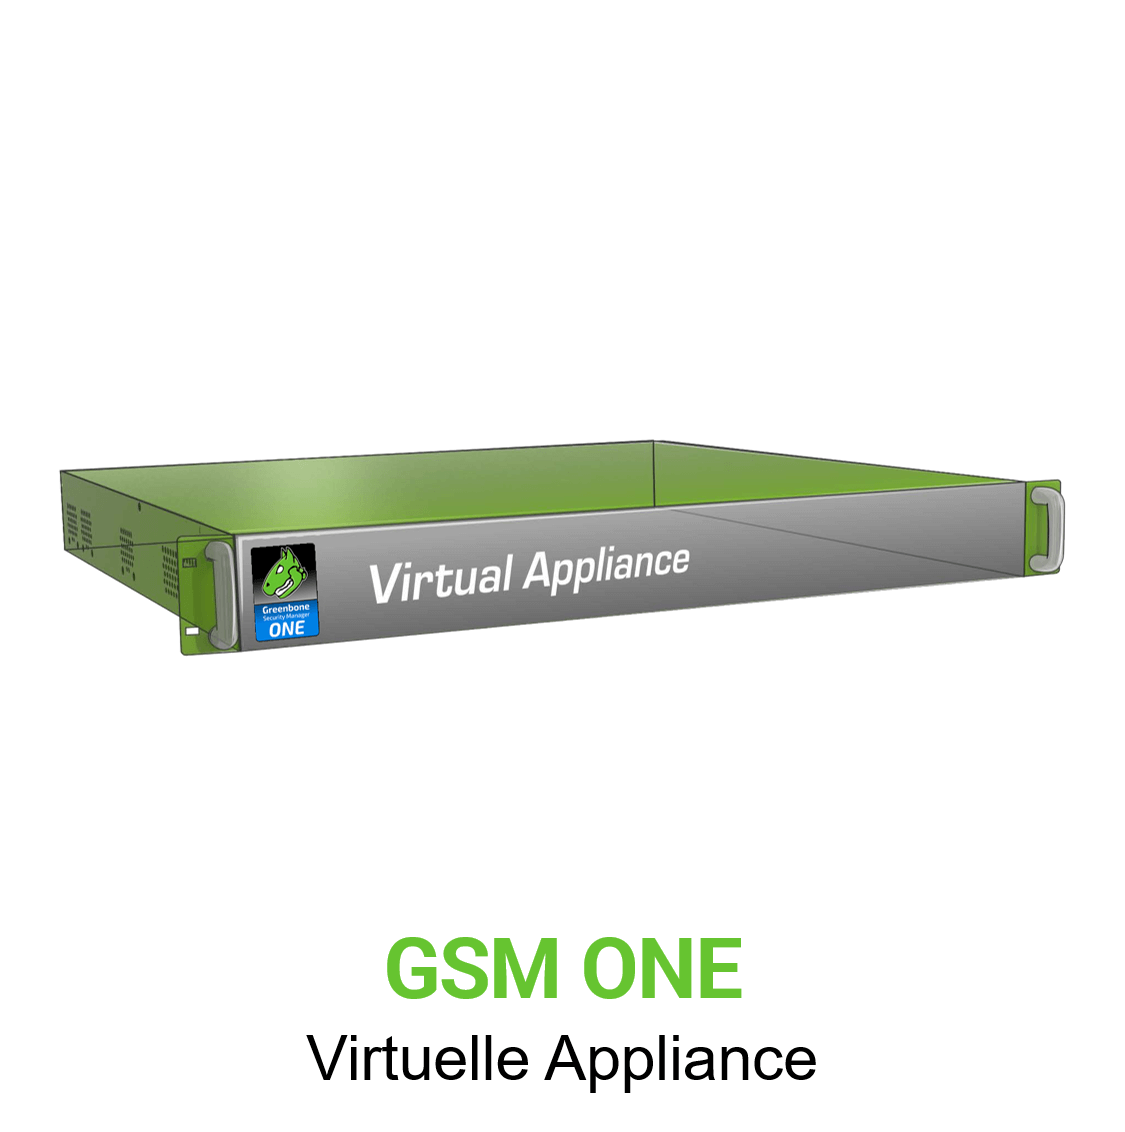 Greenbone GSM-ONE Virtuelle Appliance Vorschaubild ohne Greenbone logo mit Modellbezeichnung